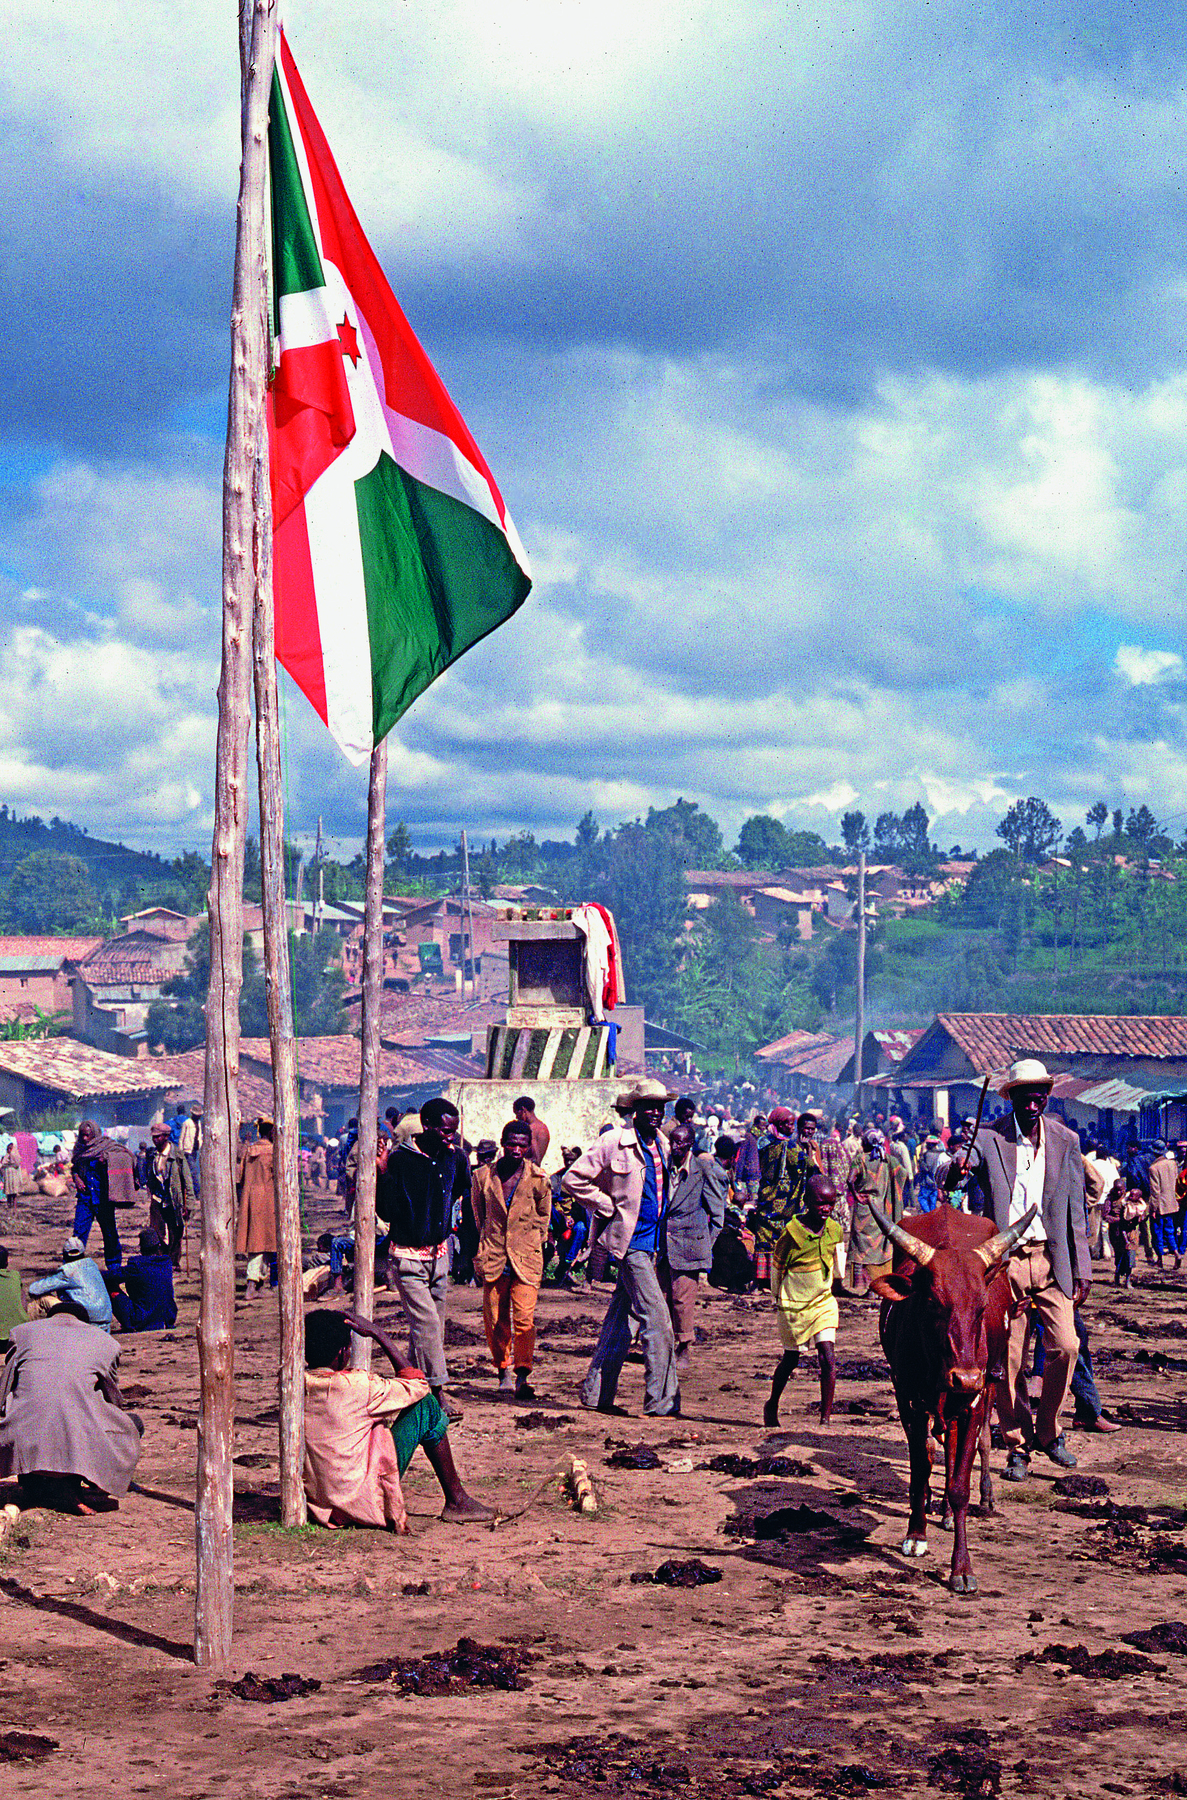 Fotografia. Pessoas caminhando sobre chão de terra. À frente, uma bandeira no mastro. Ao fundo, um vilarejo.